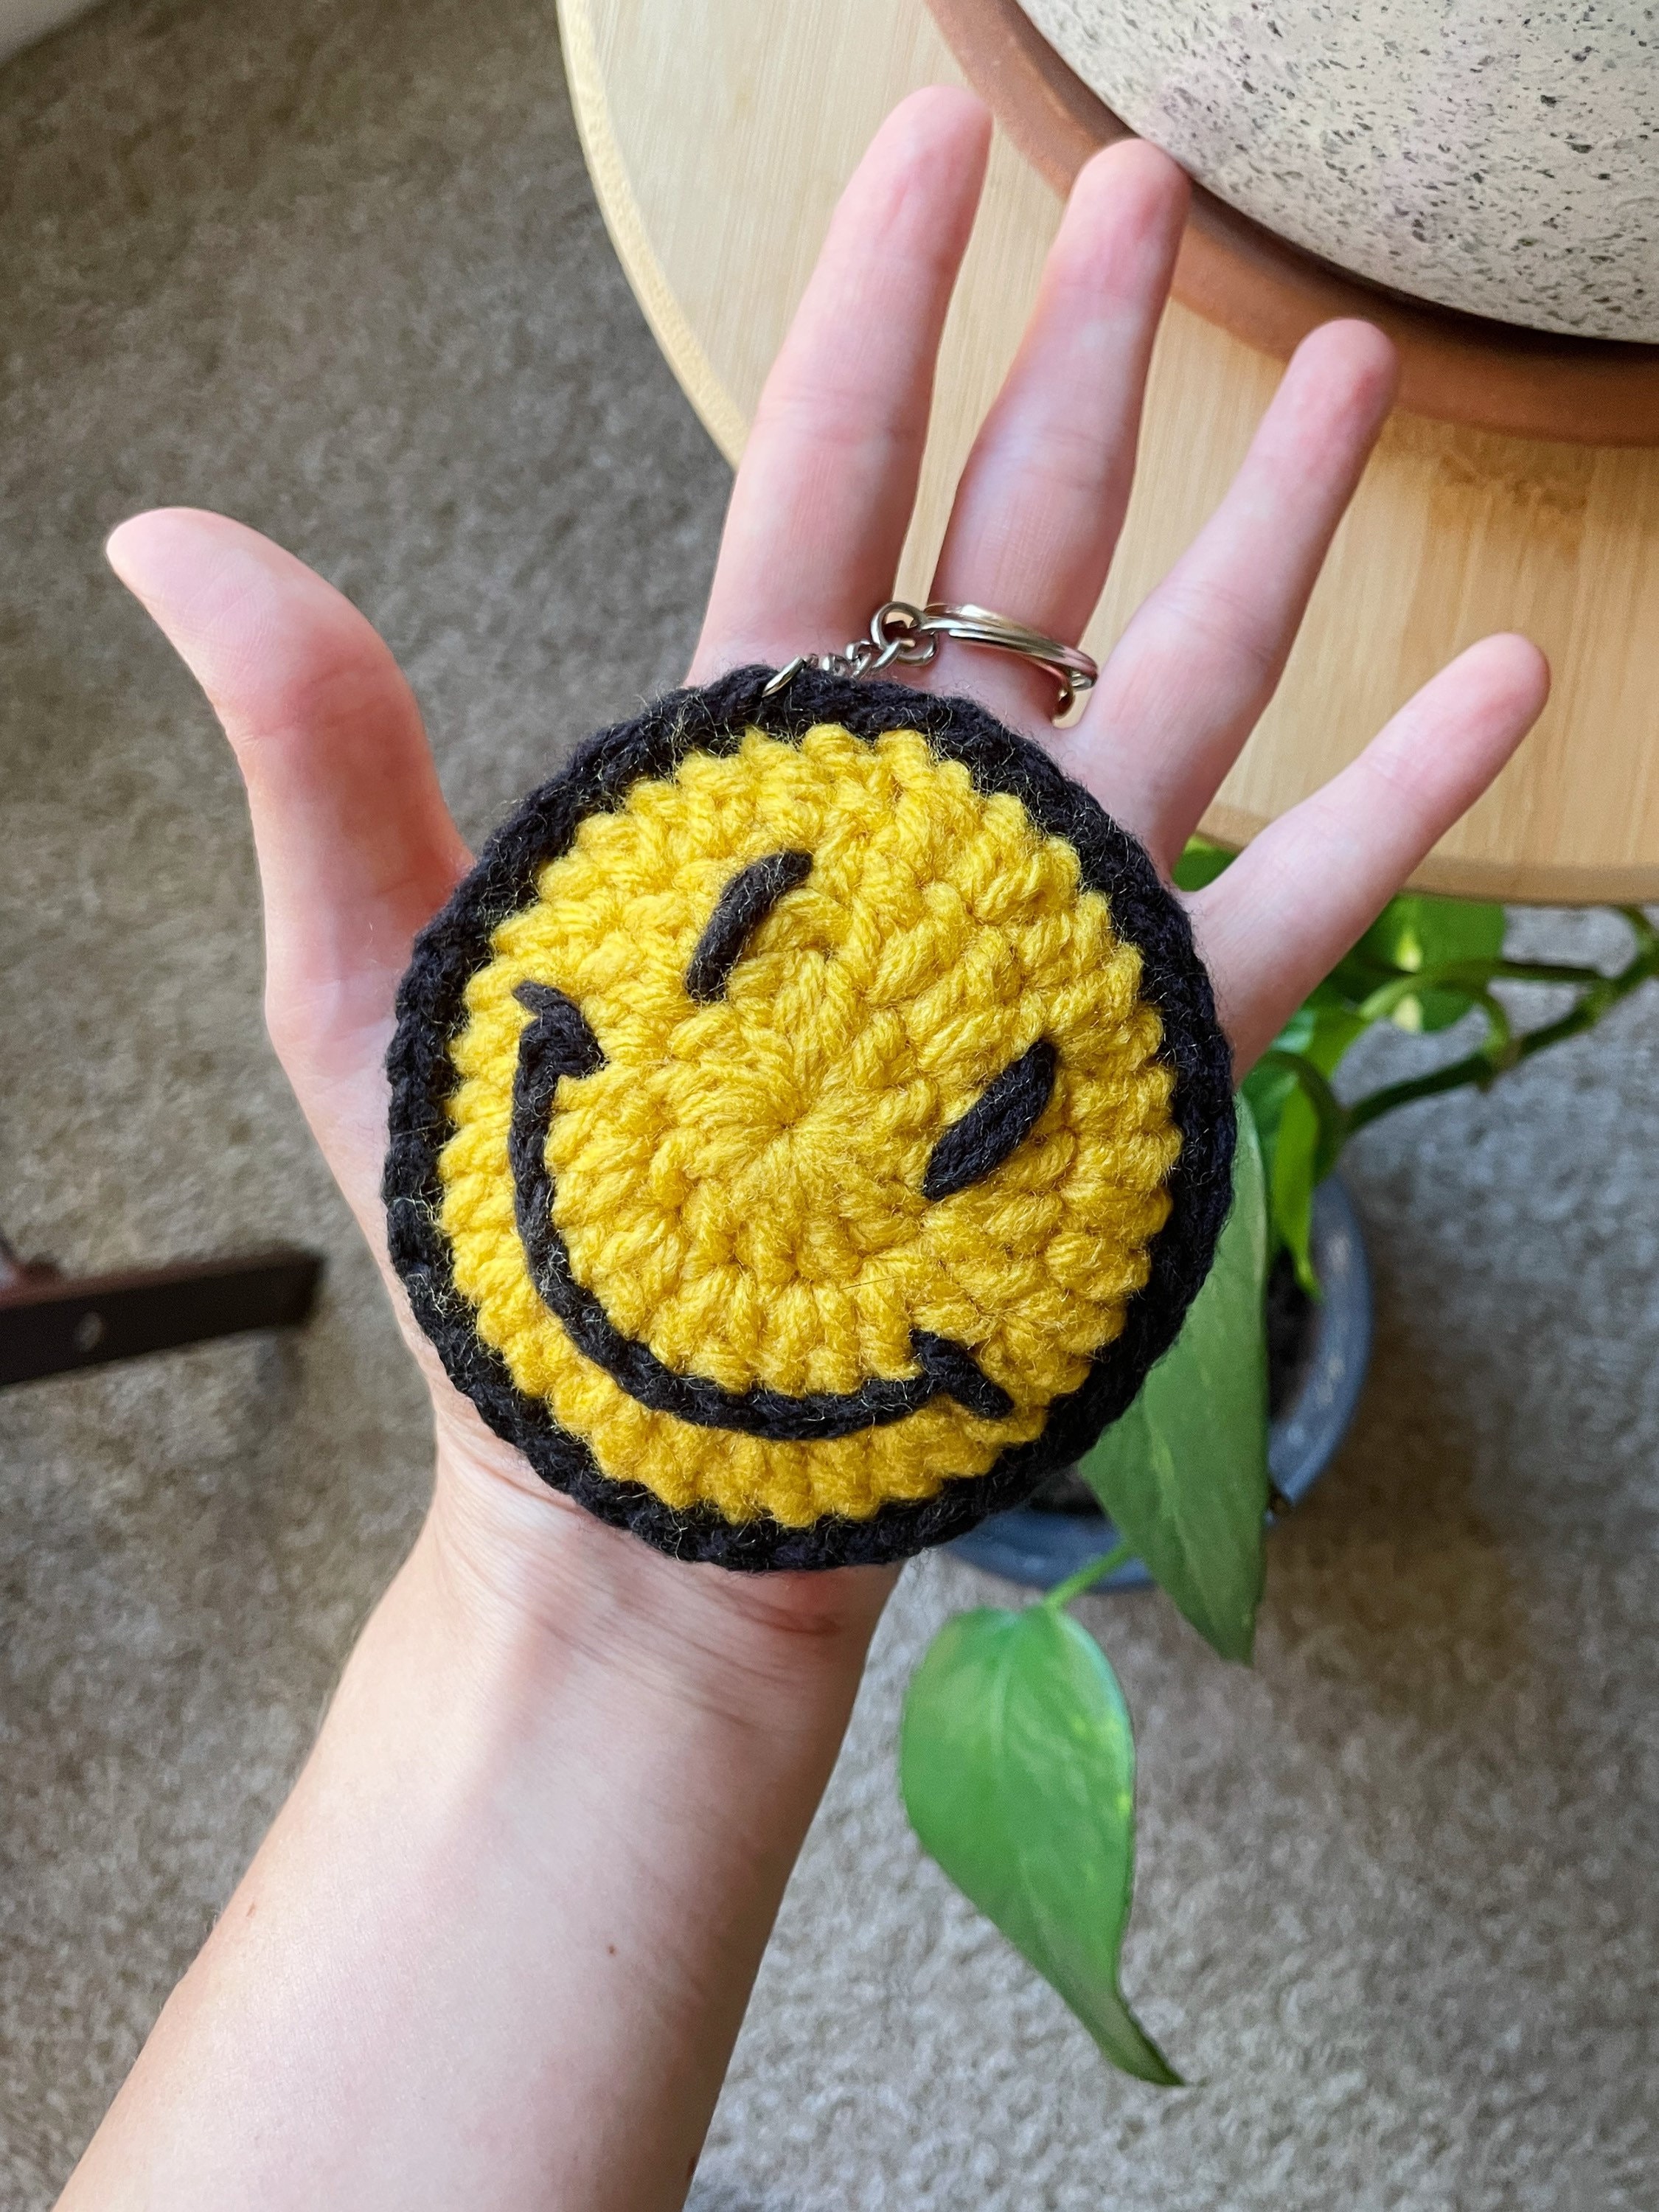 An epic face keychain for my son. #crochet #amigurumi #e…